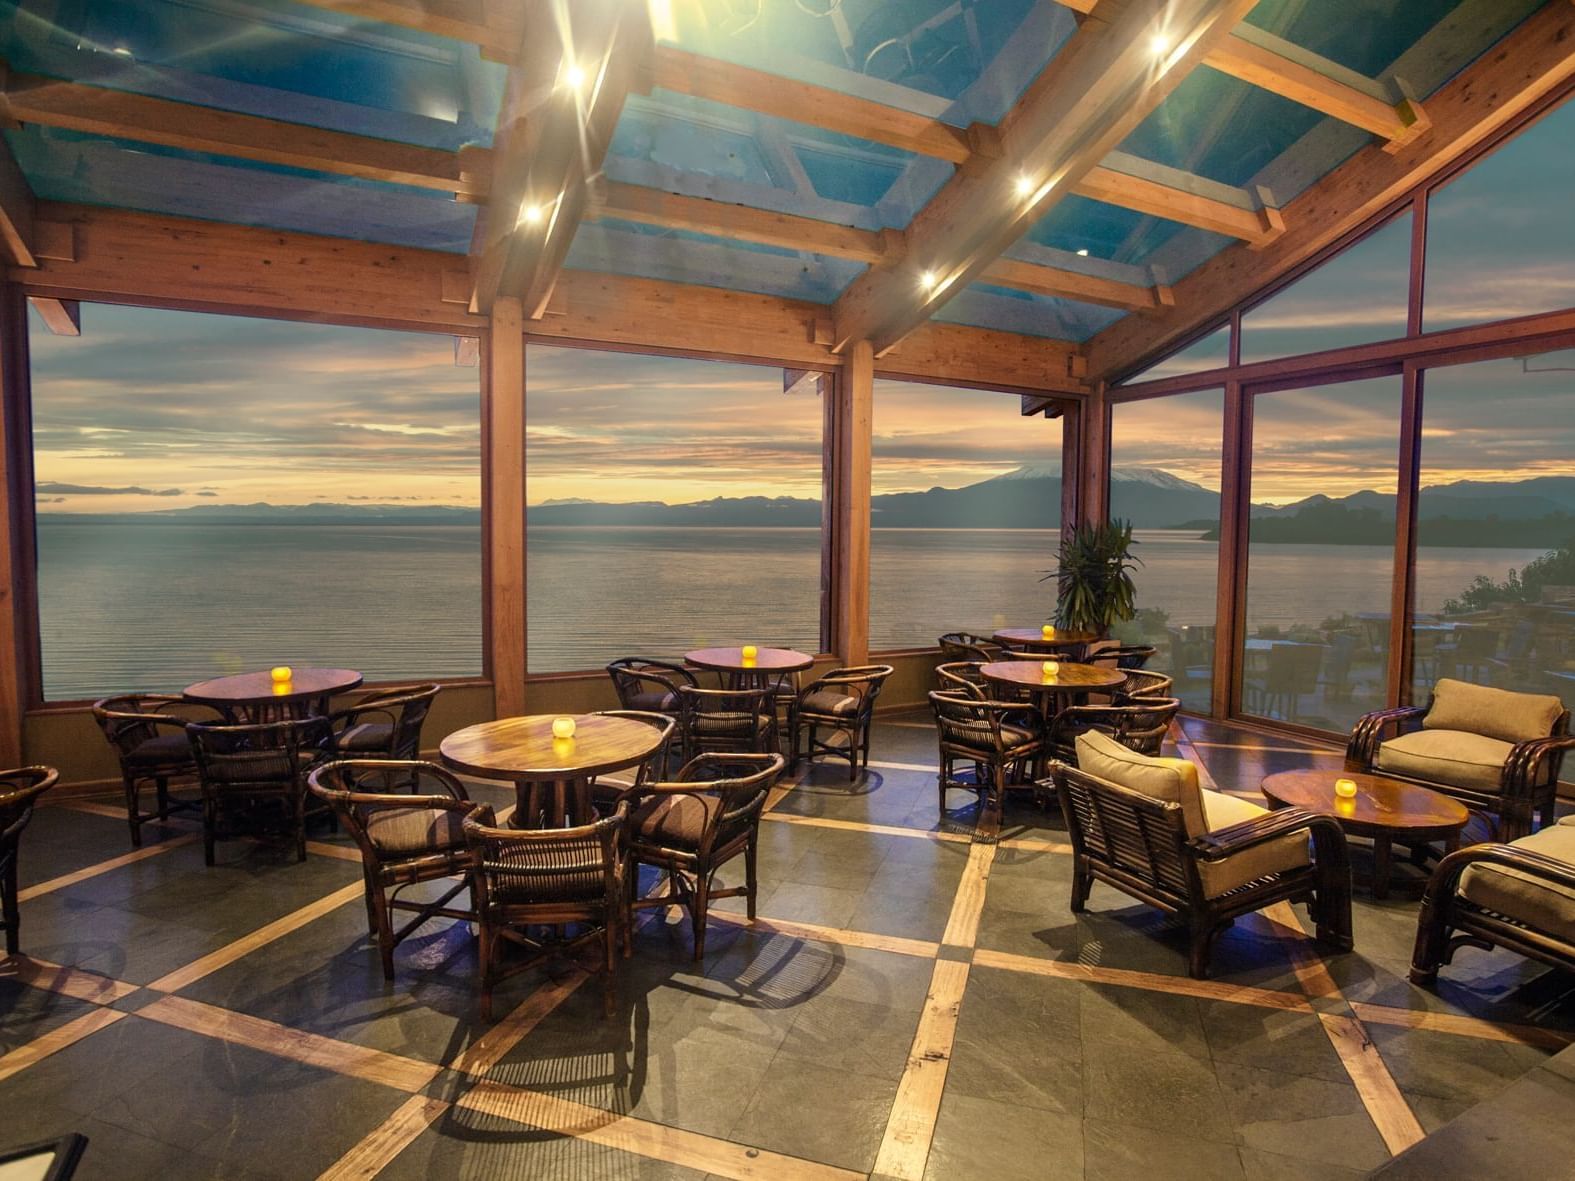 Winter Garden Restaurant at Cumbres Puerto Varas Hotel